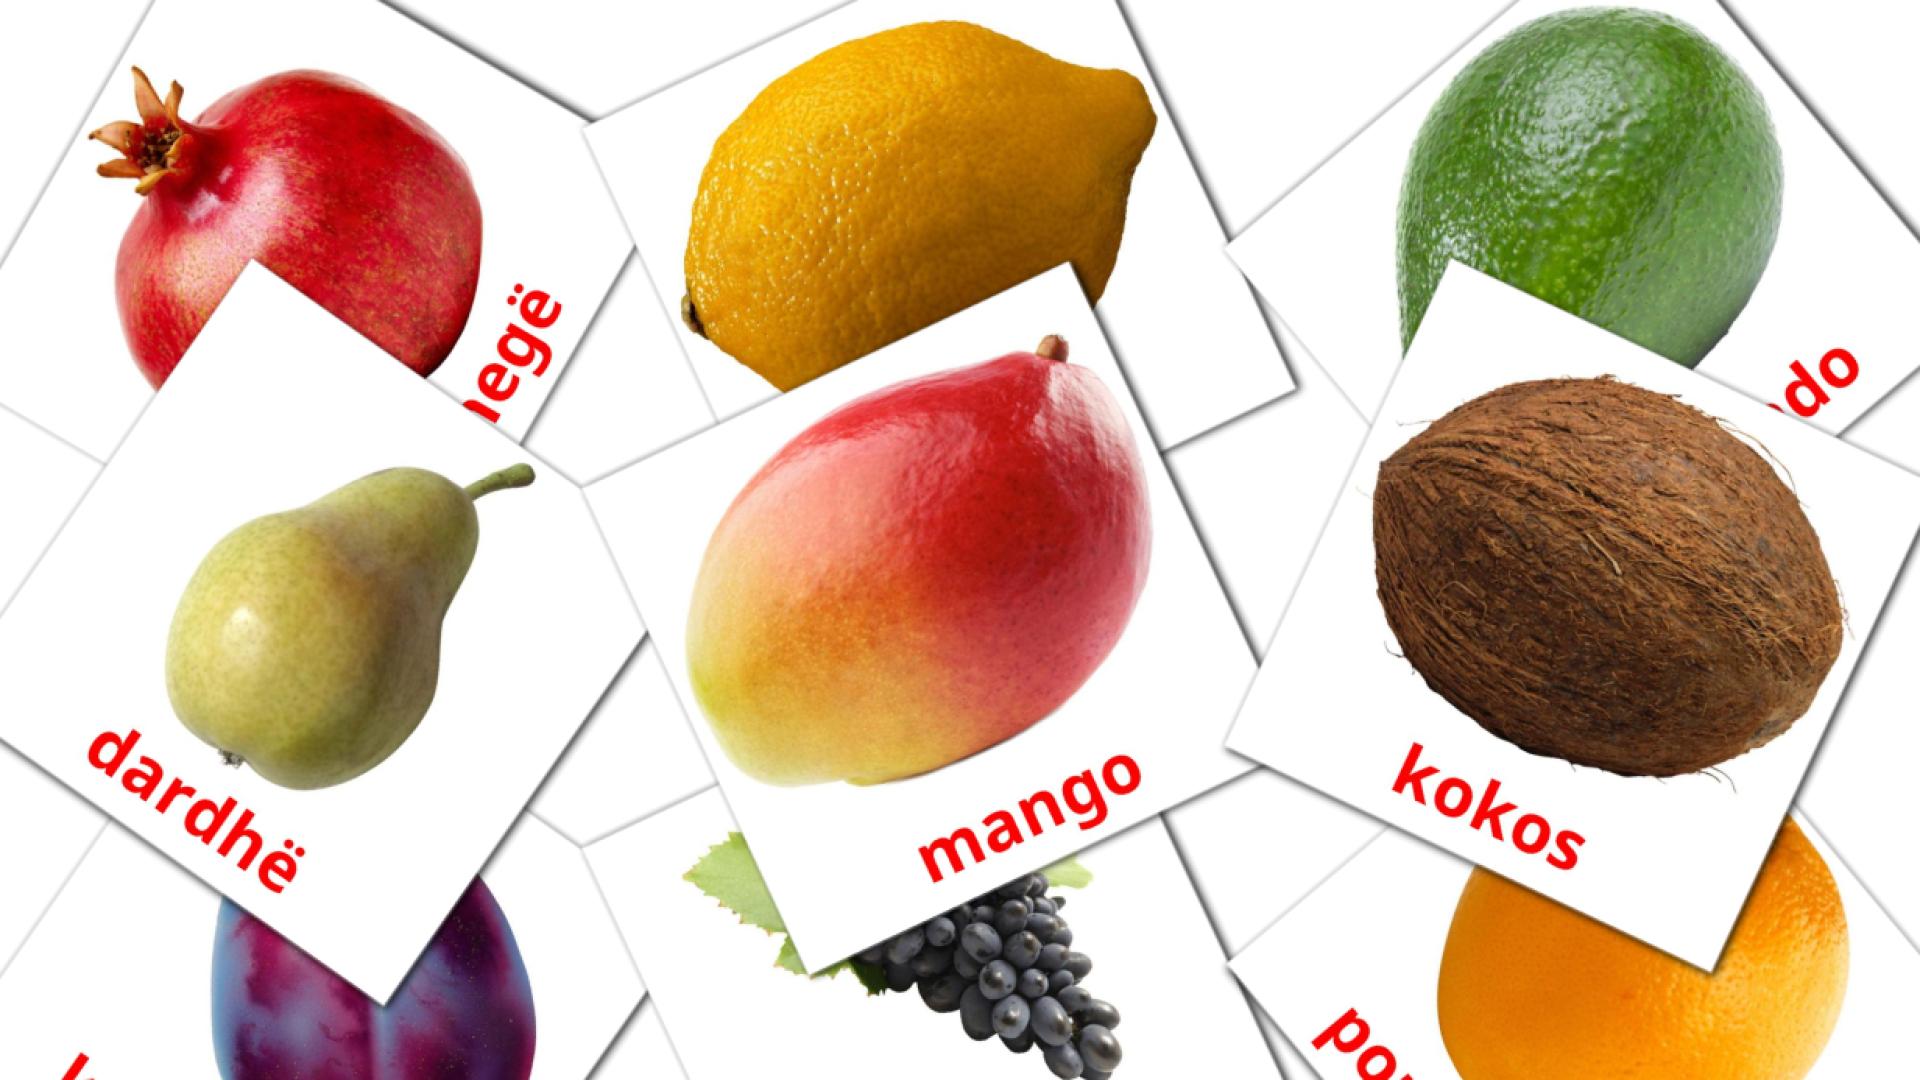 Fruits - albanian vocabulary cards